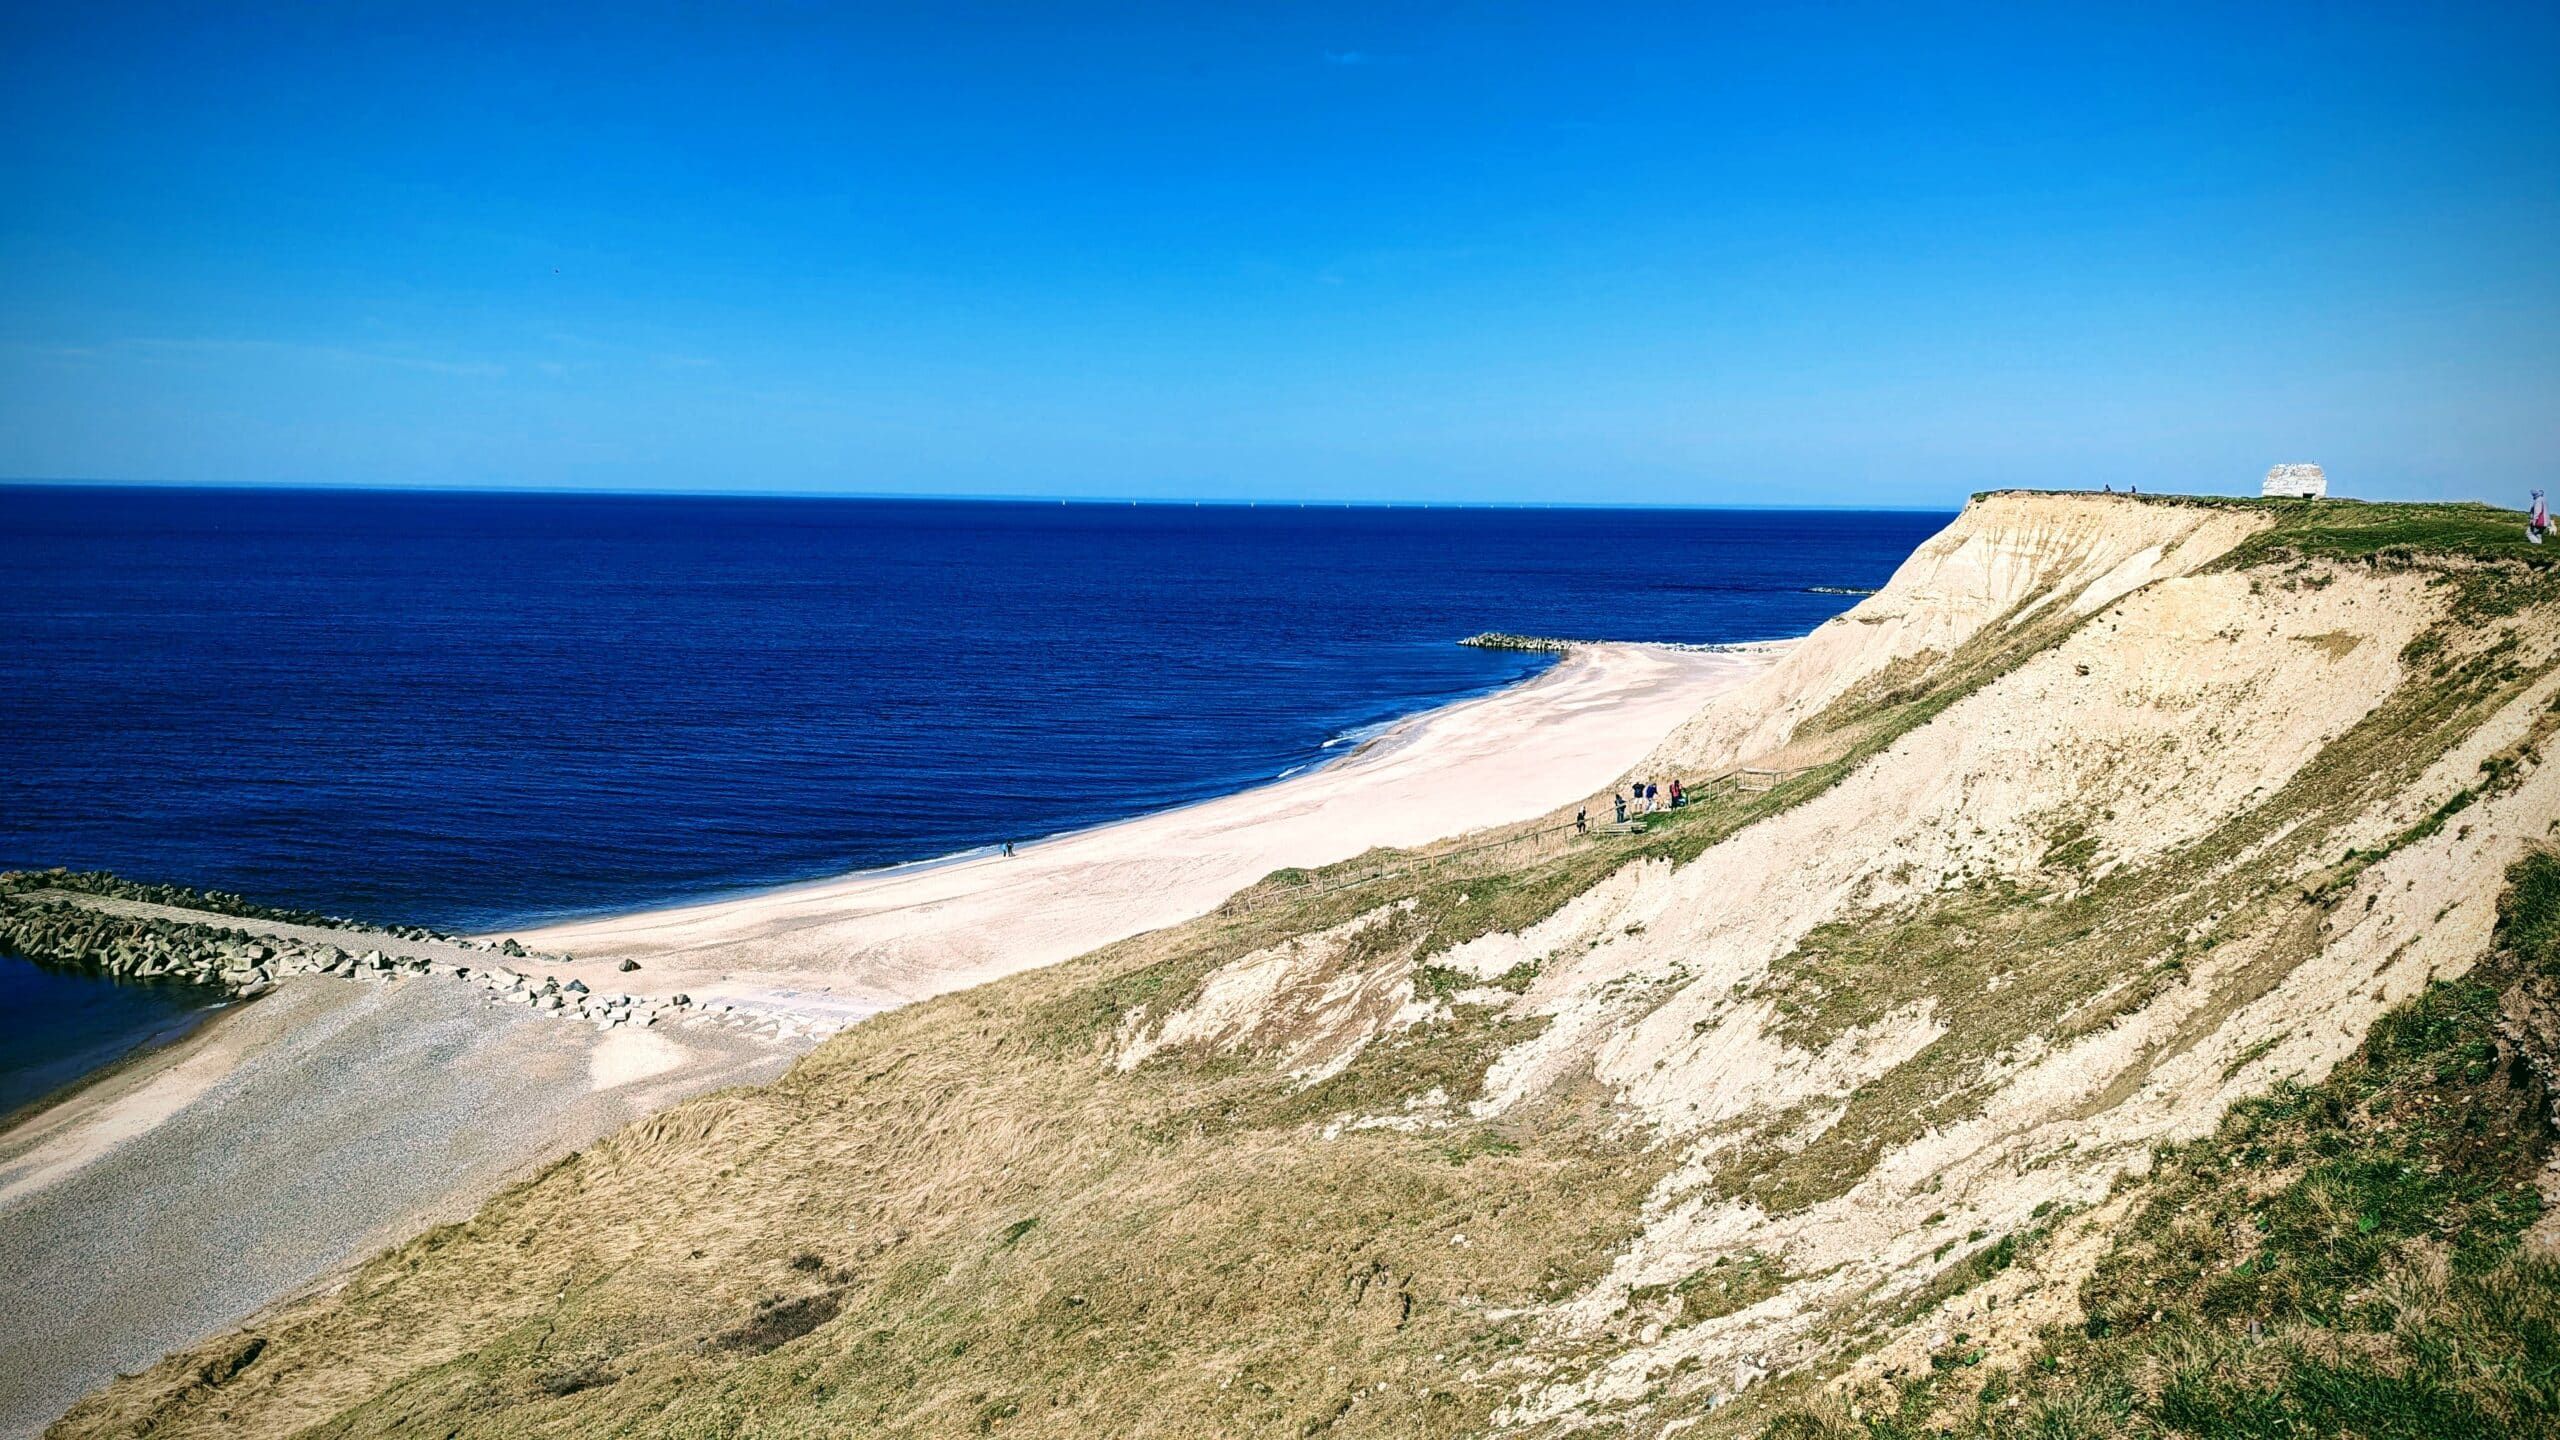 Eine Klippe mit Blick auf das Meer und einen Strand.